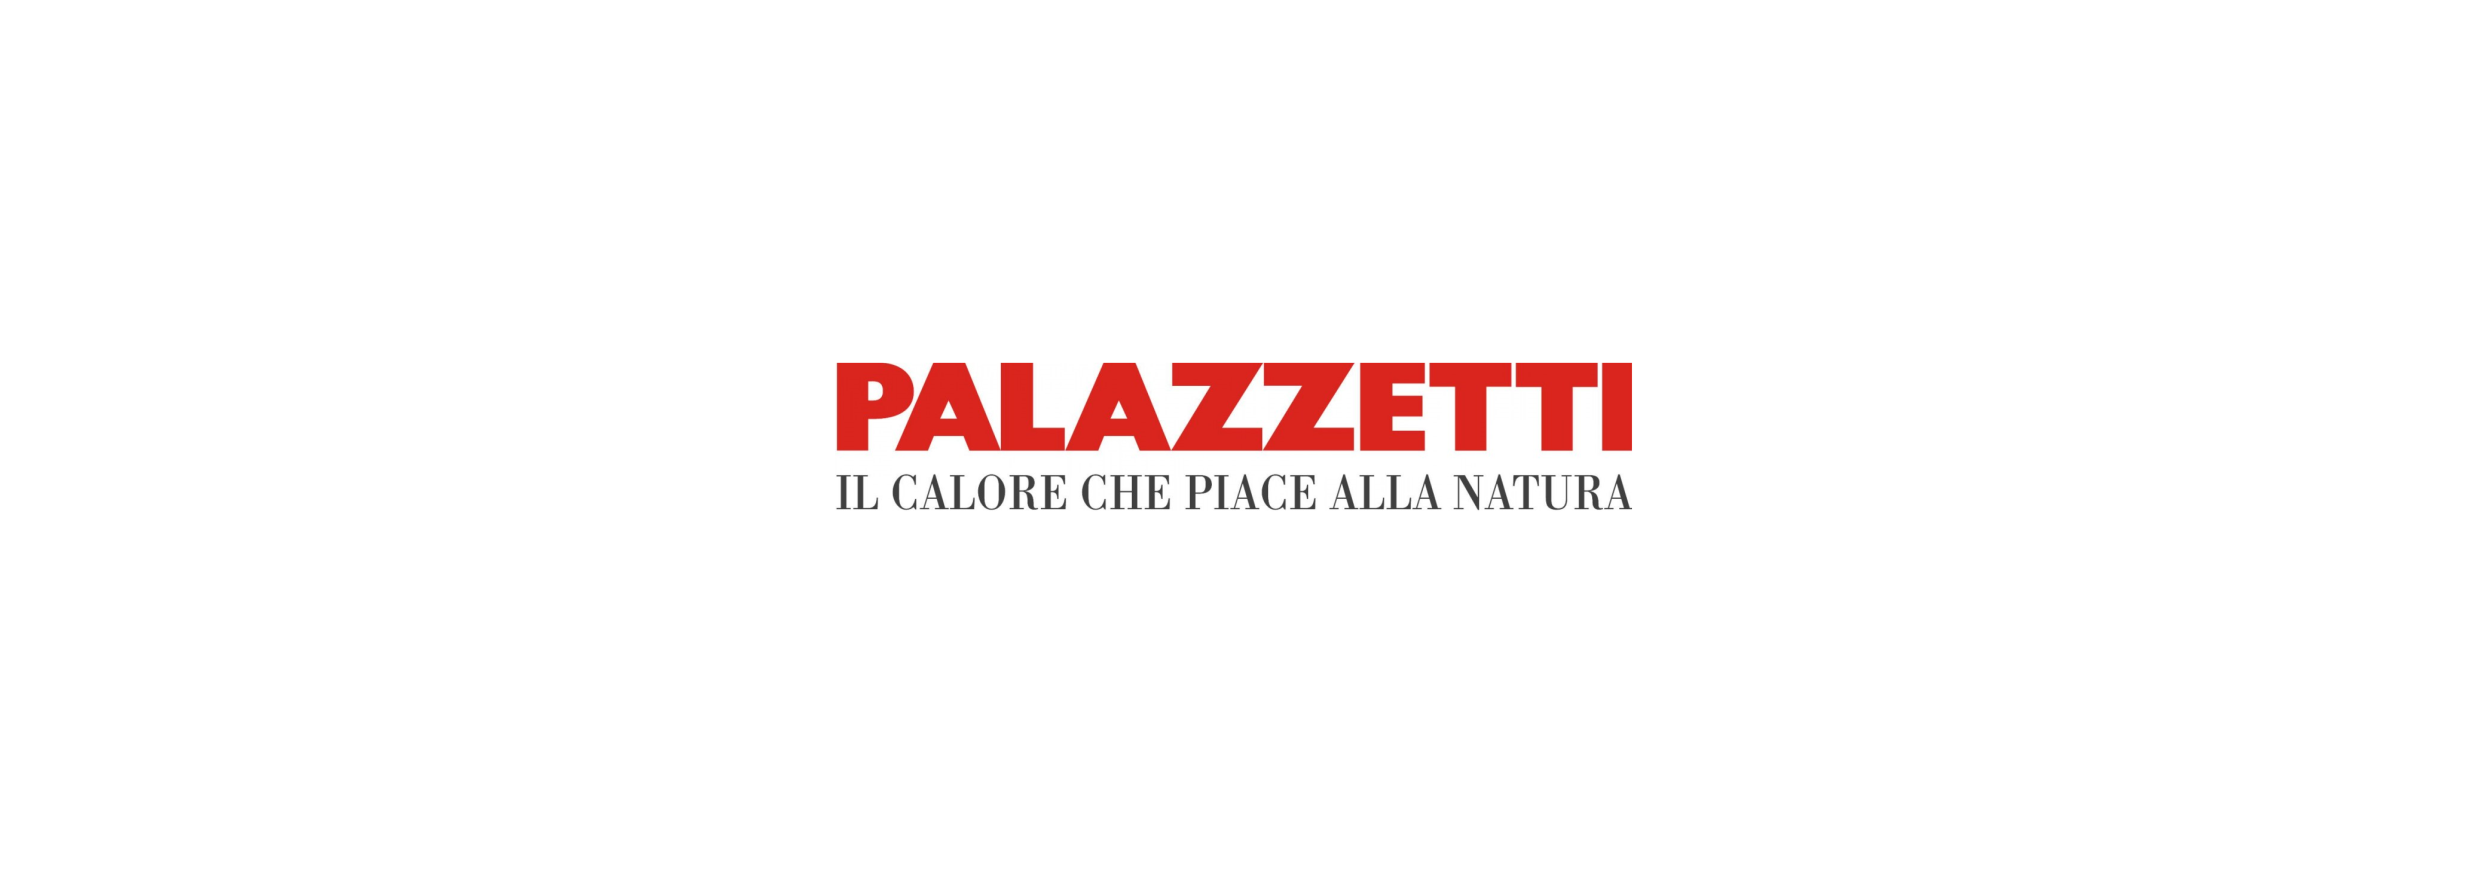 Palazzetti-Logo